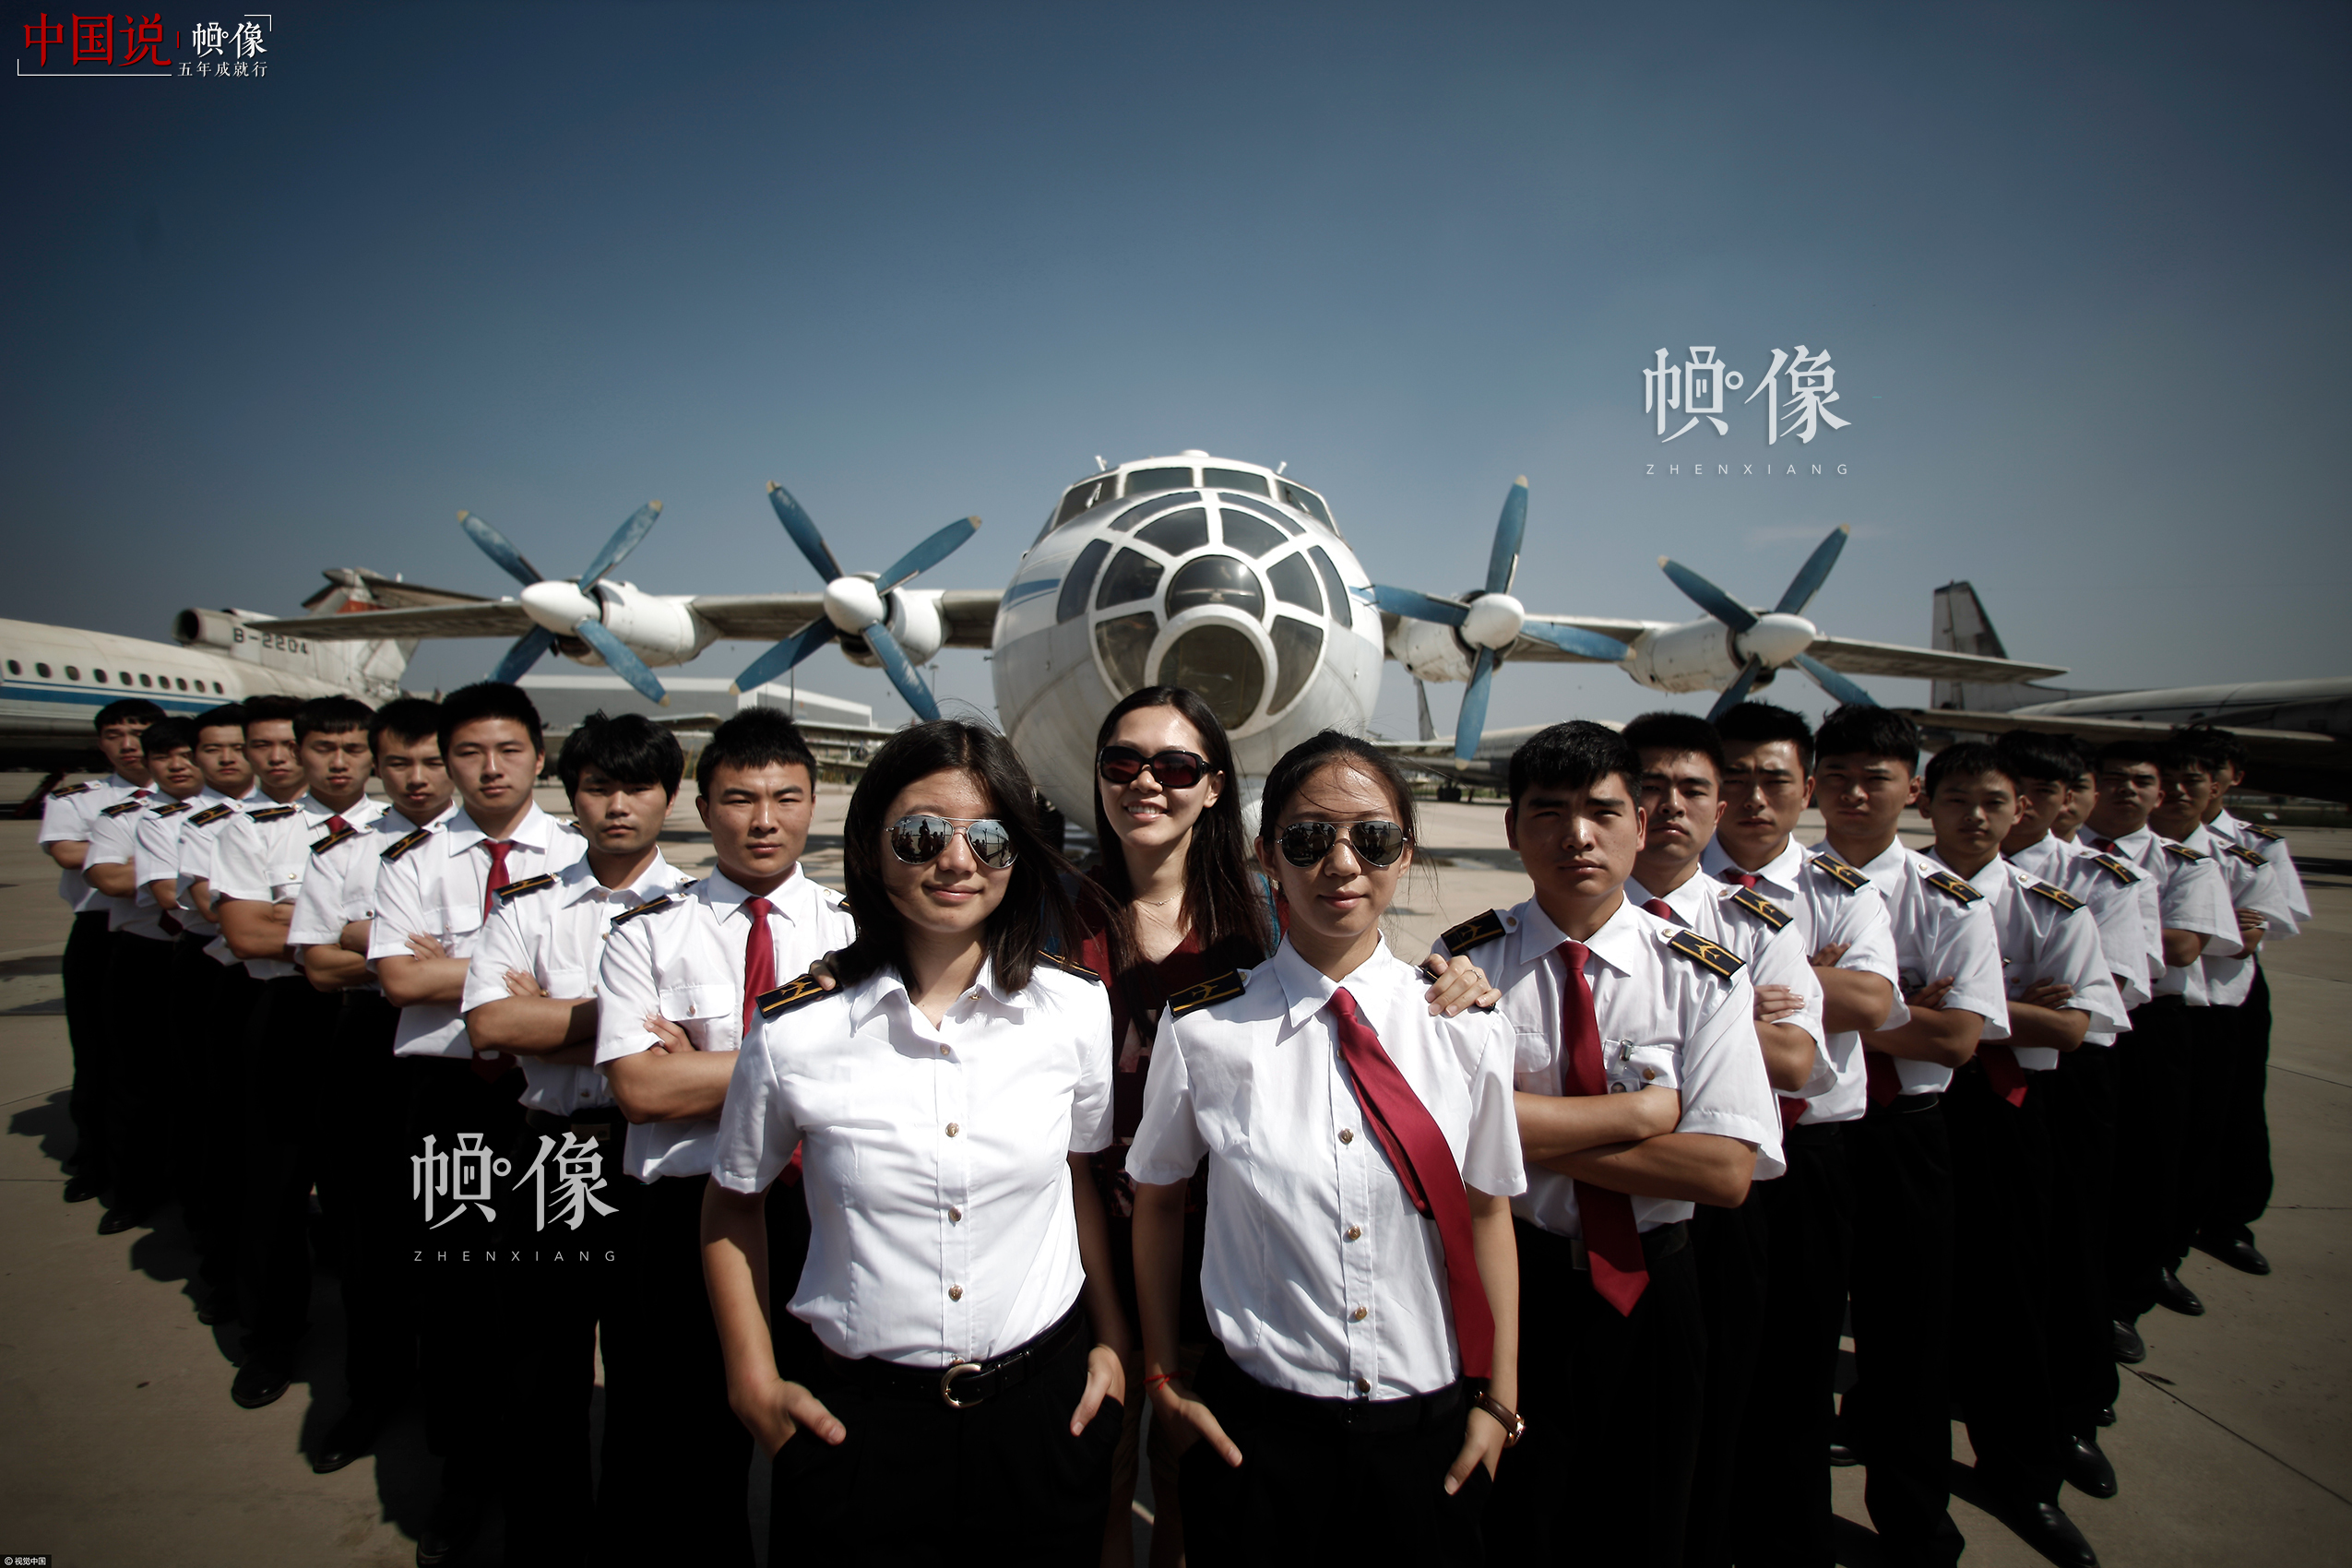 2015年06月11日，天津，一年一度的毕业季如约而至，学子们纷纷在校园内拍摄毕业照,为青春留下最美的记忆。中国民航大学3位90后美女飞行员毕业生身着统一制服，在校园内拍摄个性毕业照，霸气十足。视觉中国供图